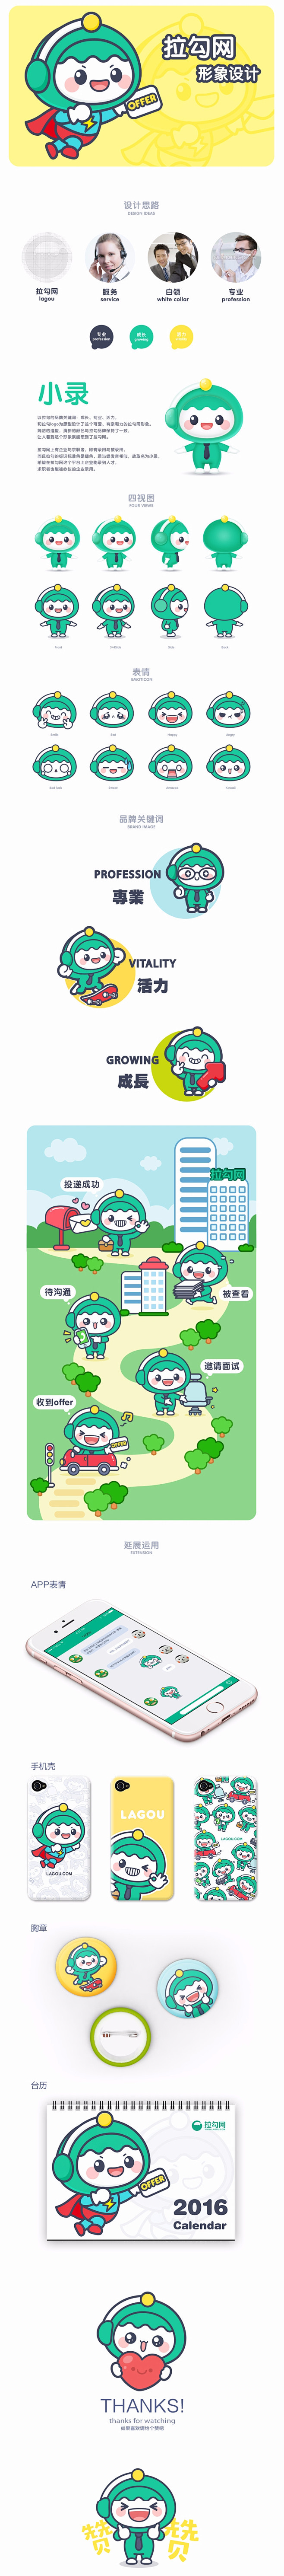 拉勾网 卡通形象设计-UI中国-专业用户...